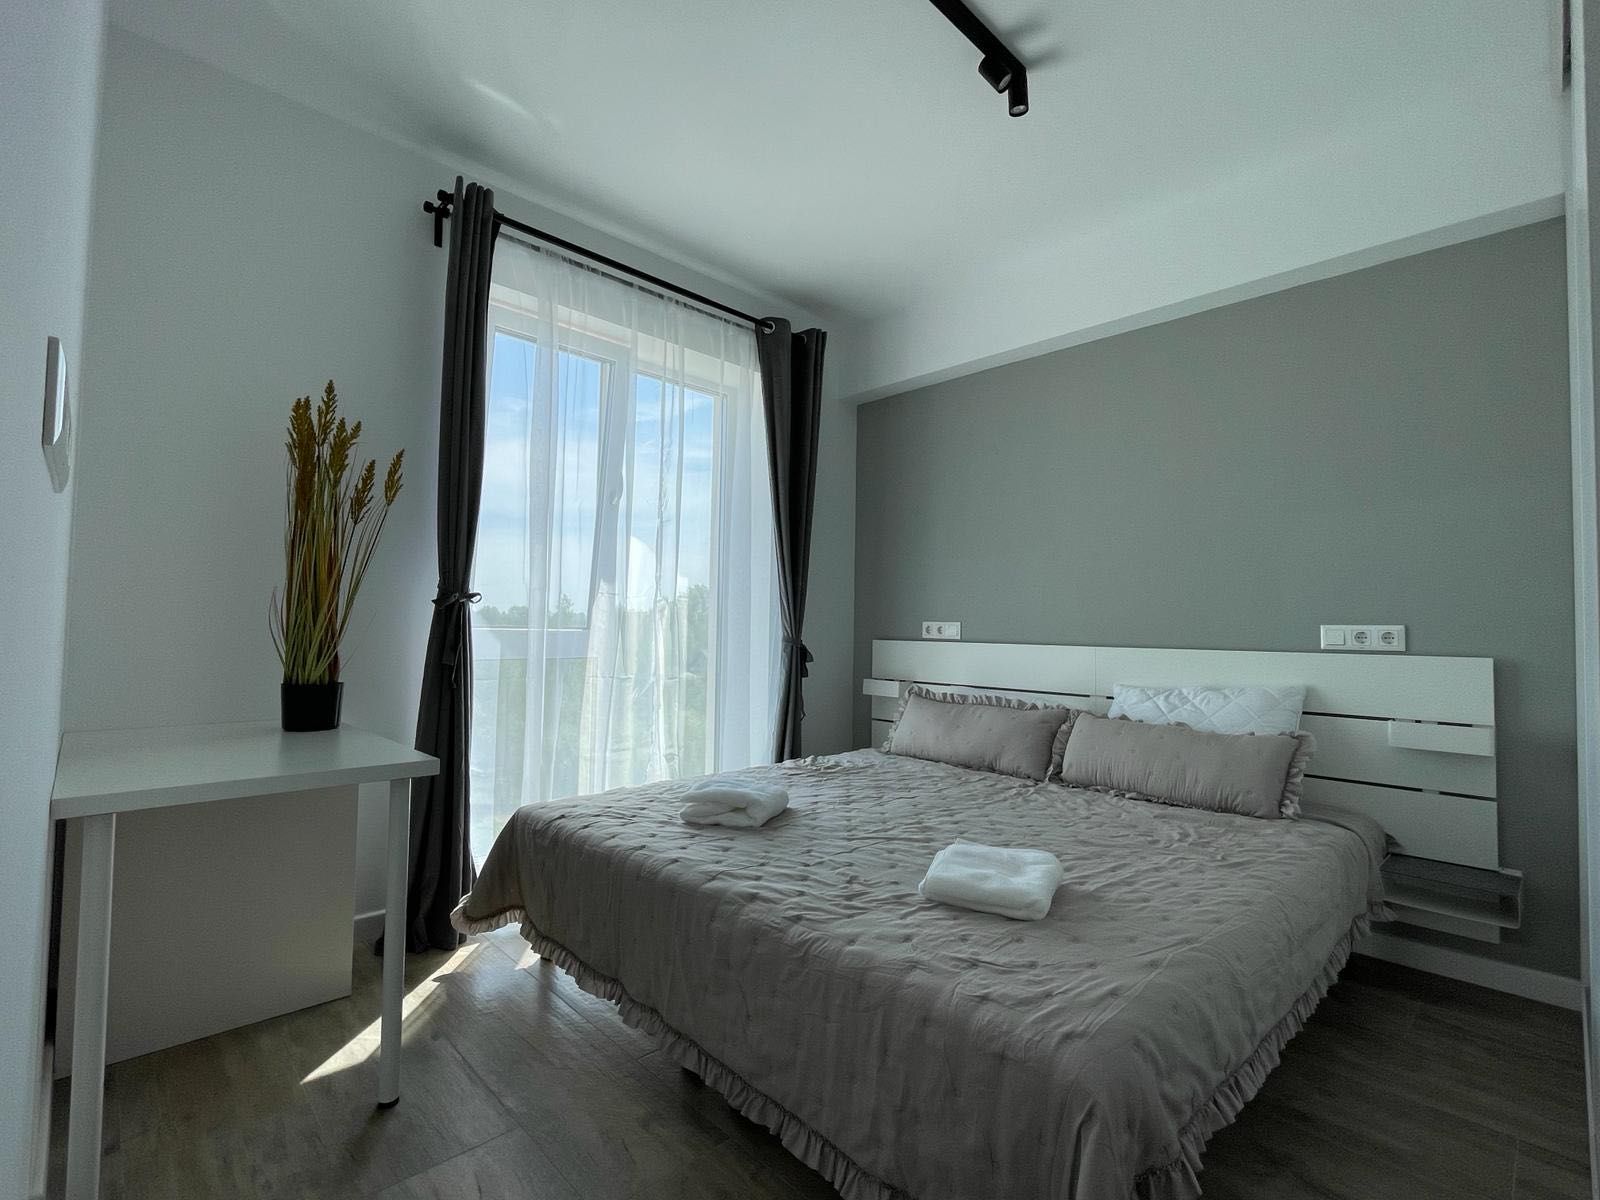 Apartament de inchiriat in Targoviste| Premium | NOU| Vedere super